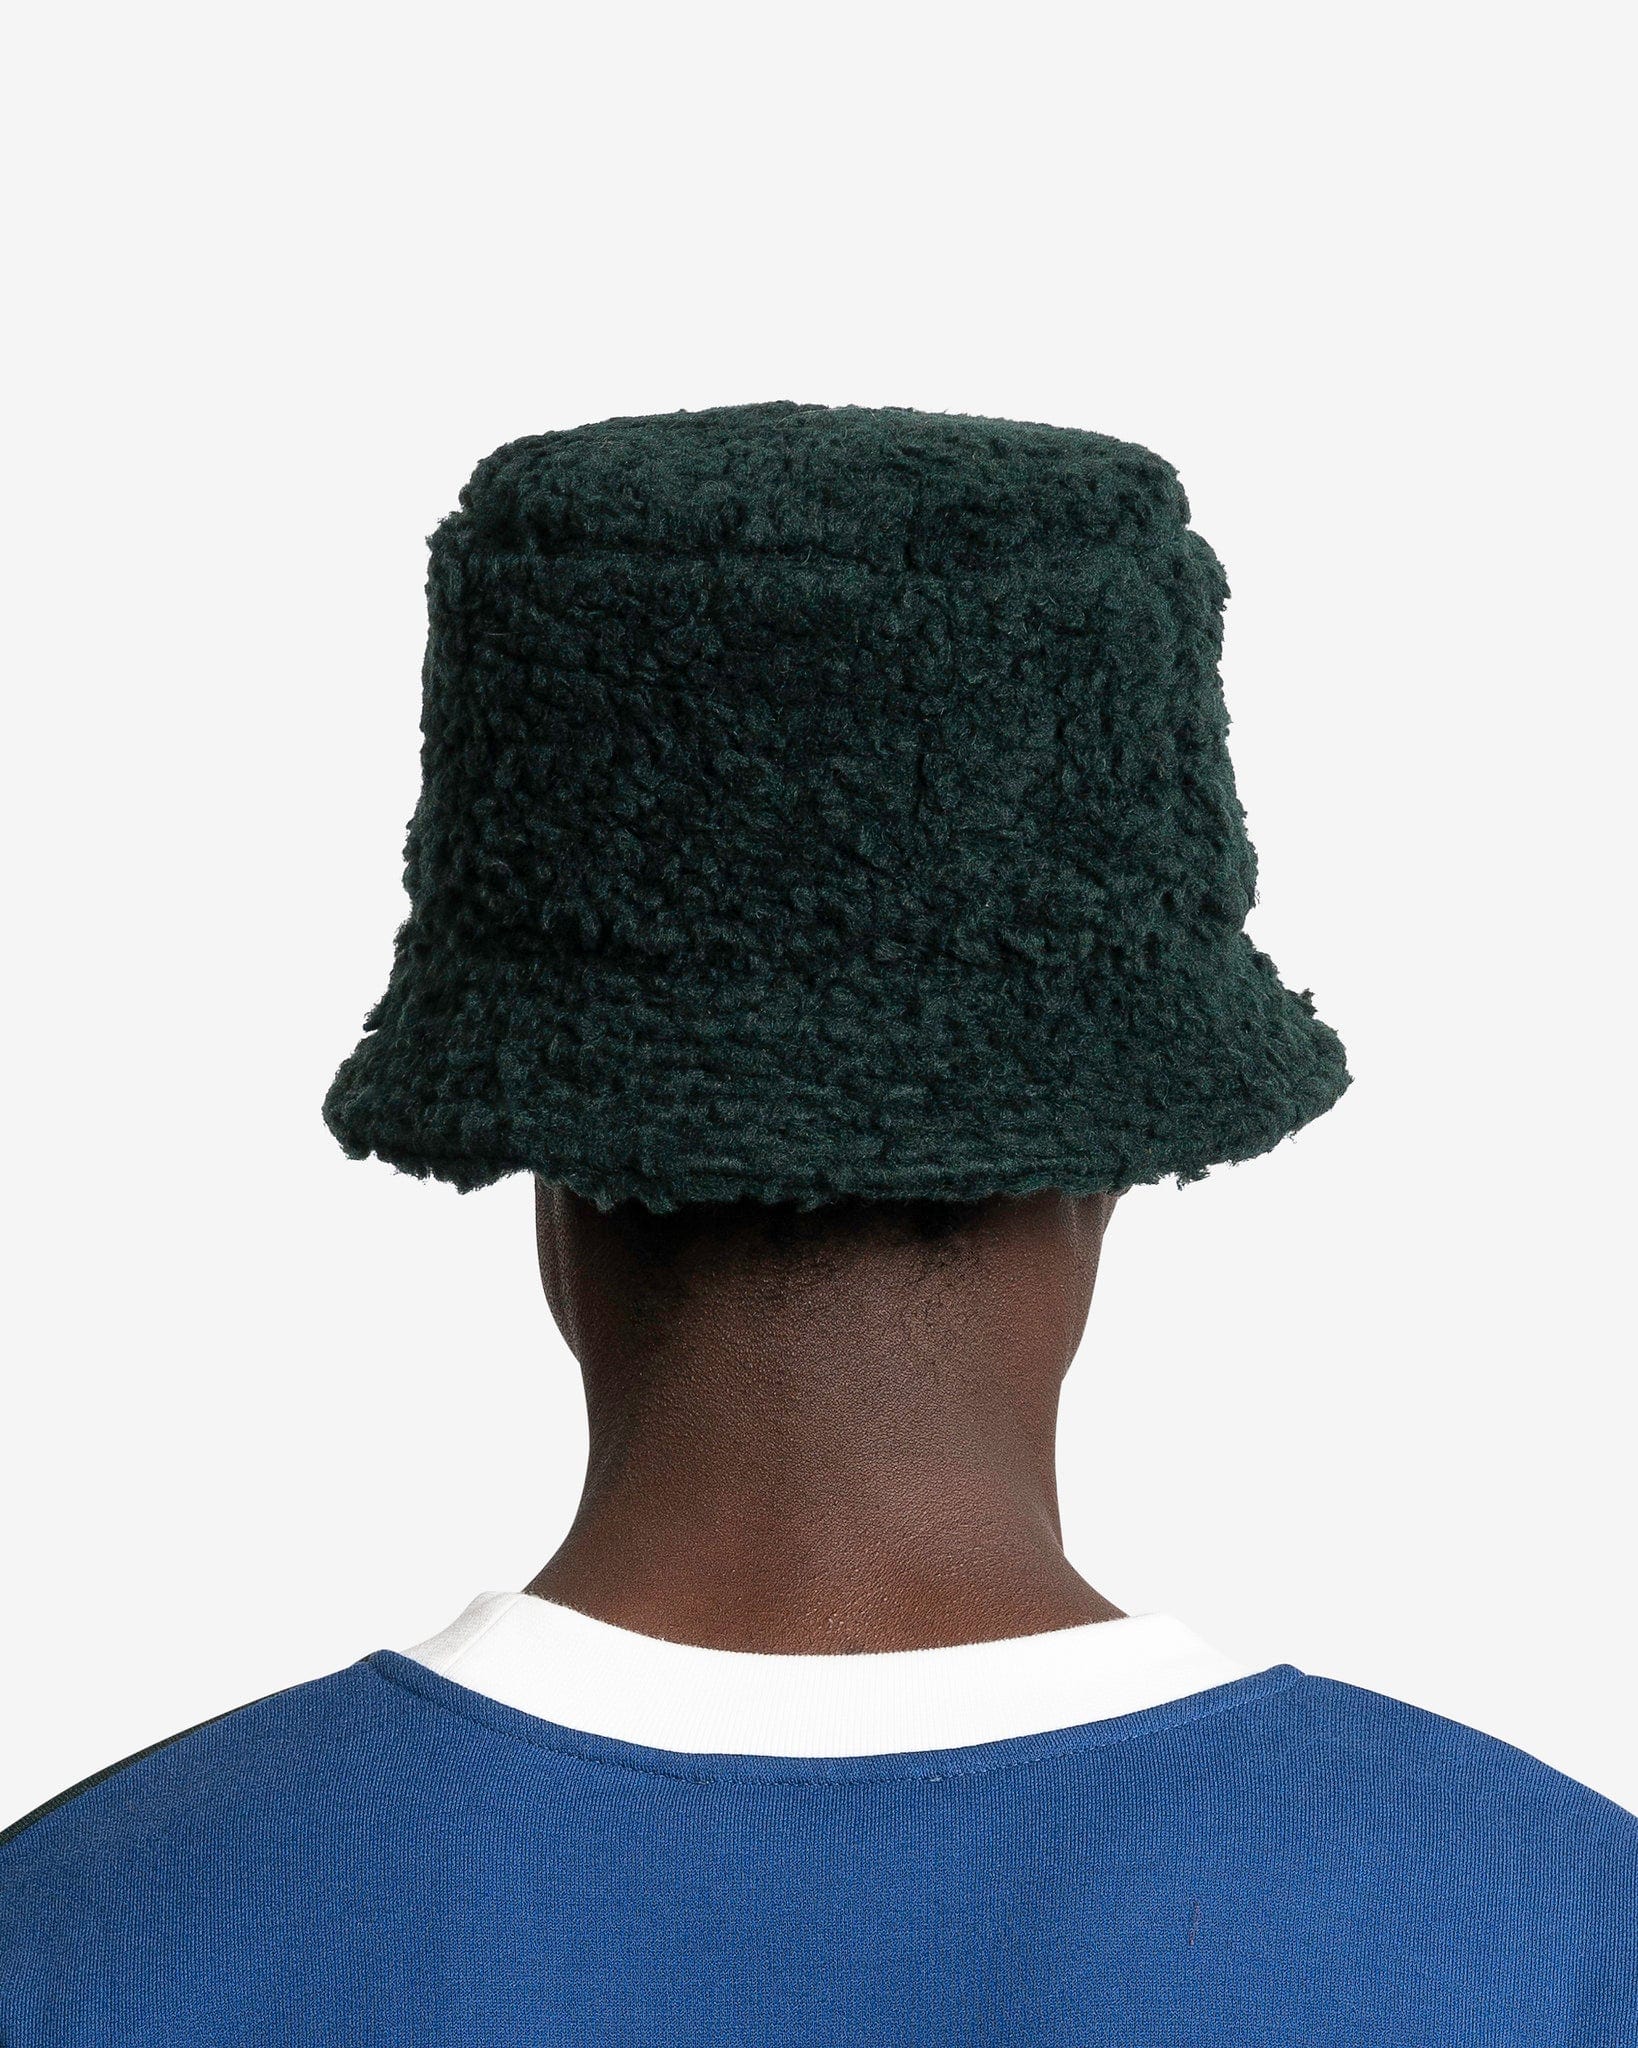 Marni Men's Hats Twist Teddy Bucket Hat in Spherical Green